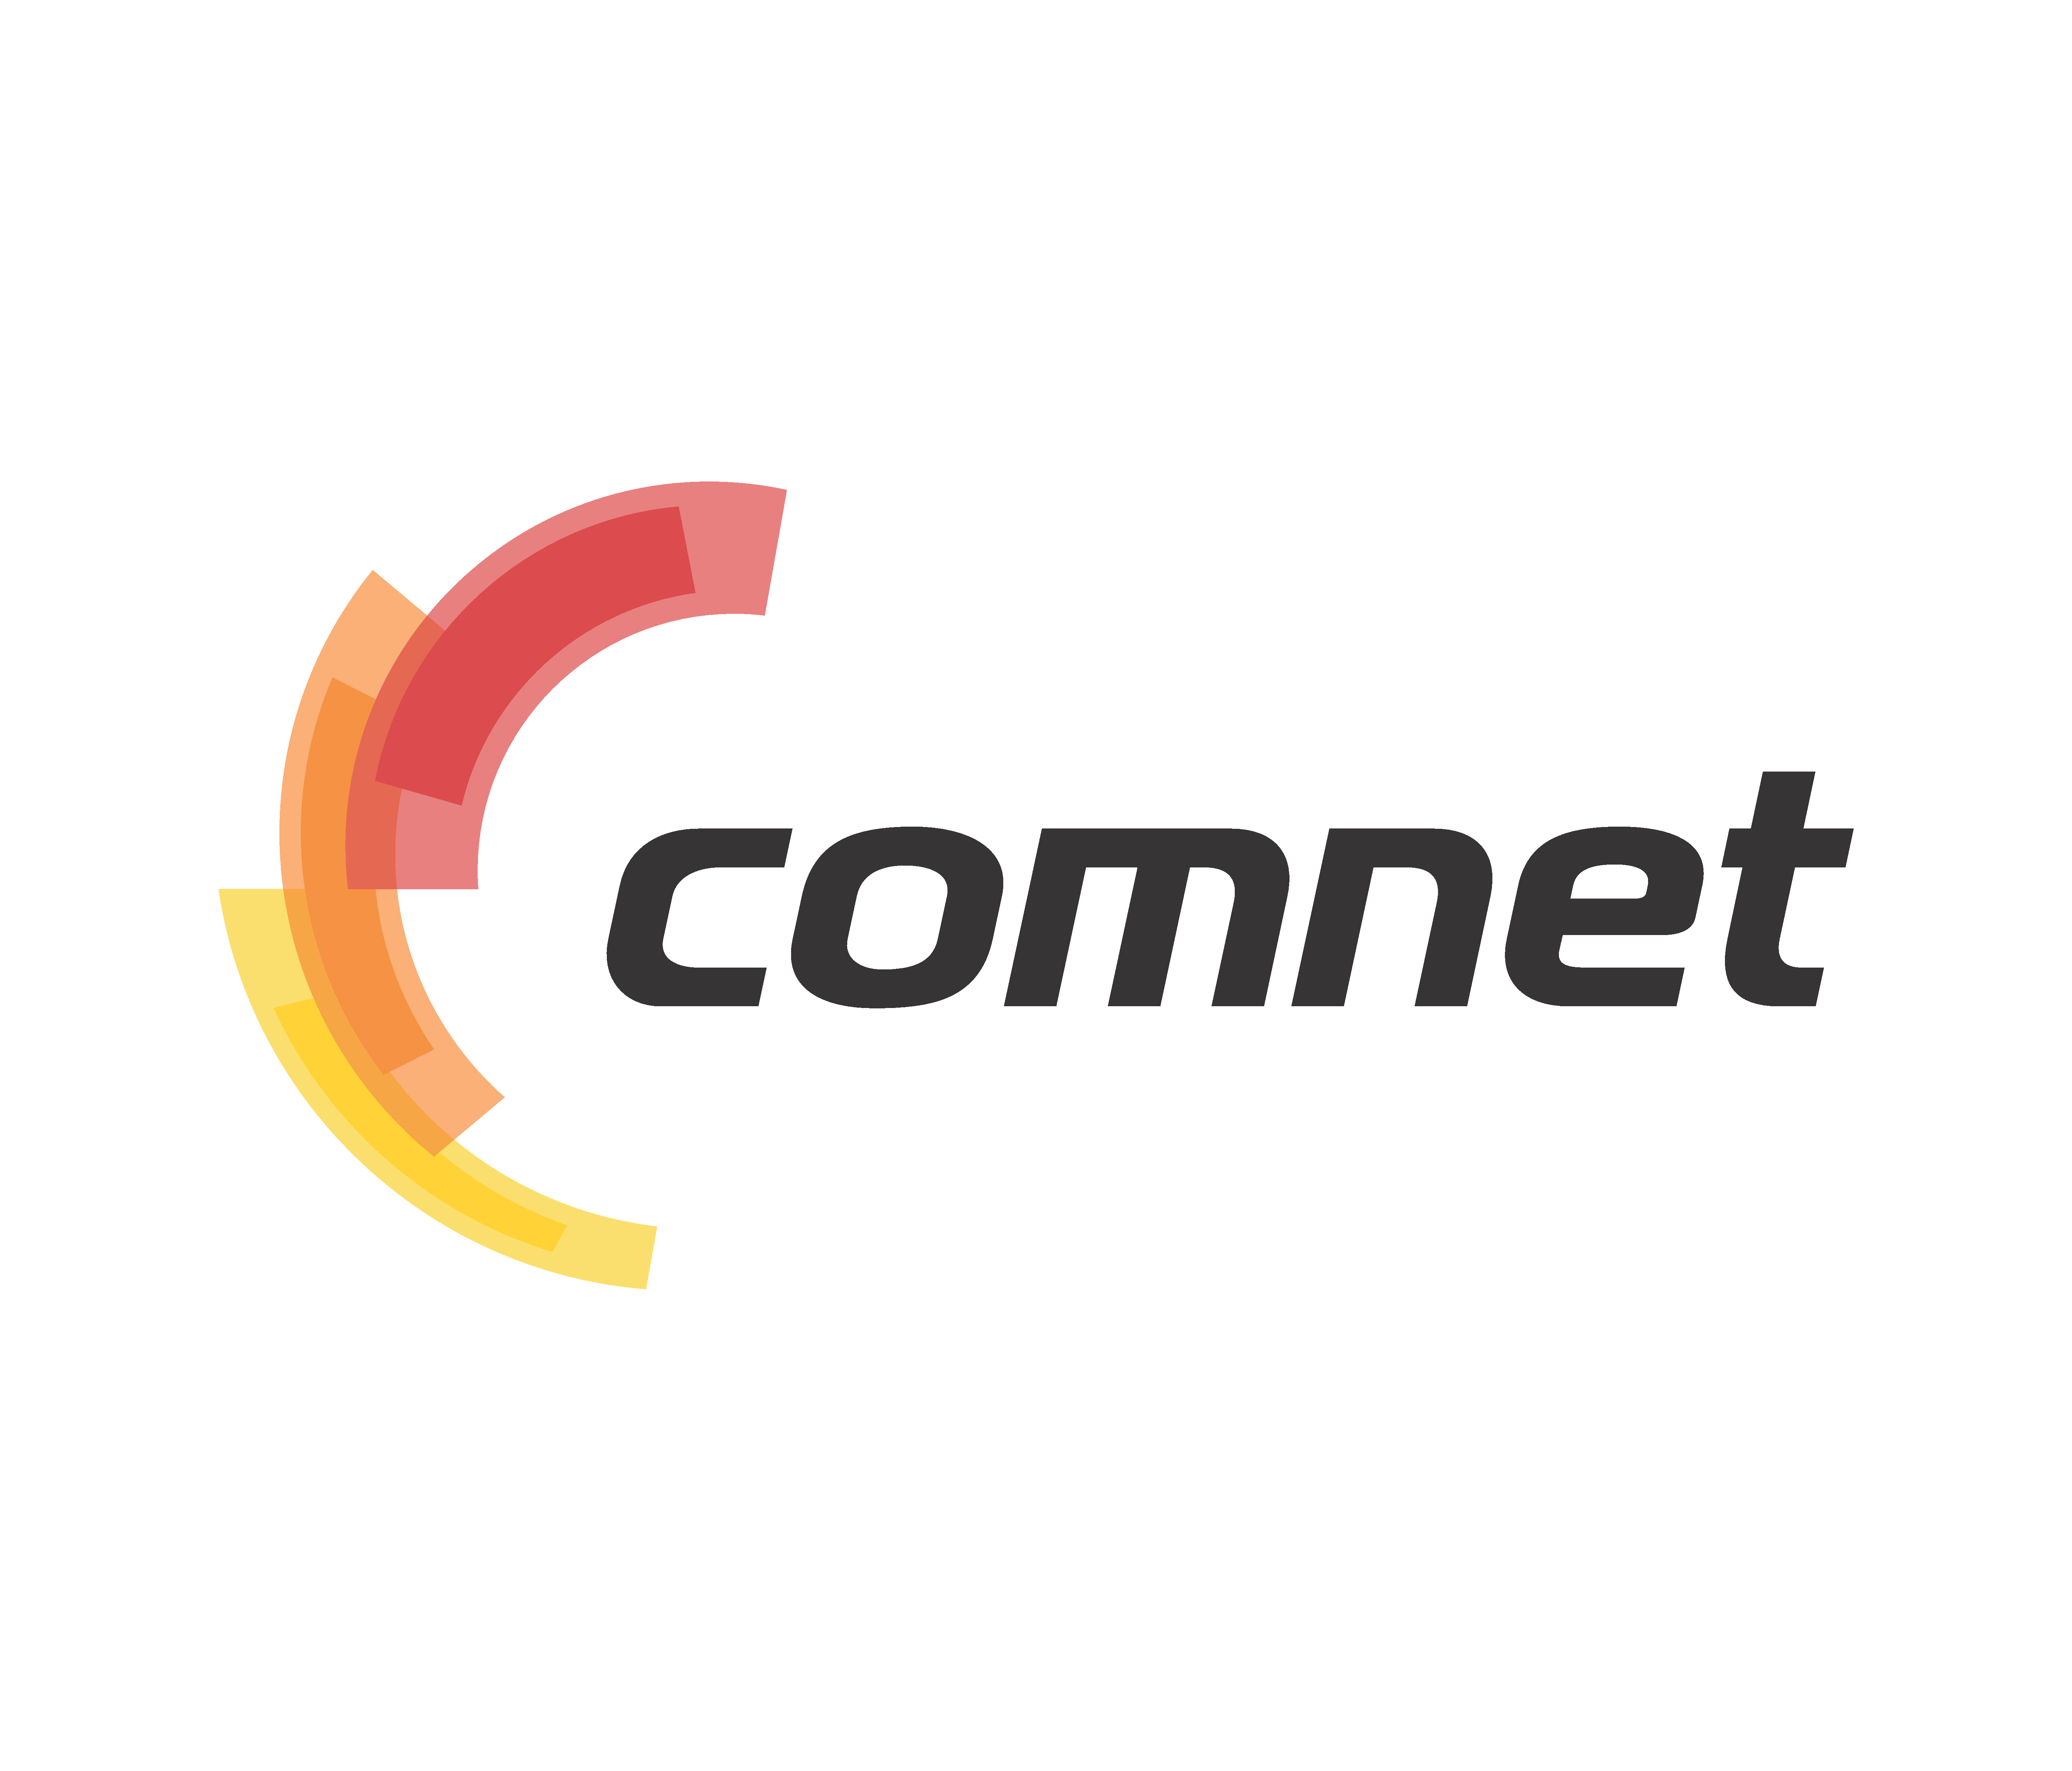 Comnet uz. COMNET logo. Логотип интернет провайдера. COMNET uz logo.